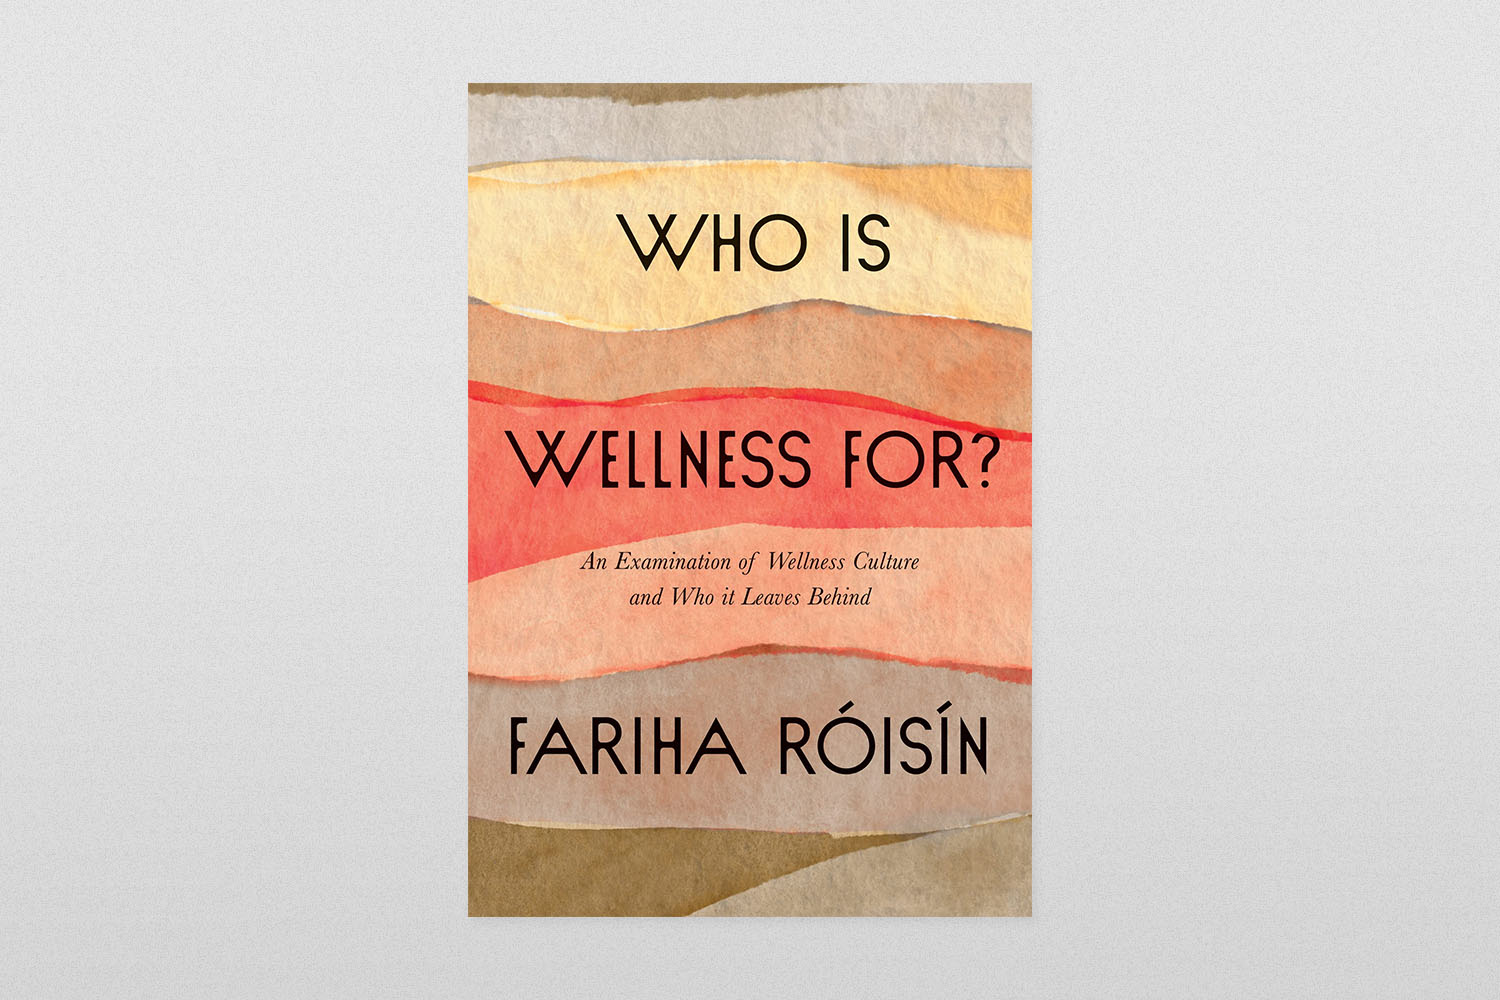 Kome je wellness namijenjen?  - Ispitivanje wellness kulture i onoga što ona ostavlja iza sebe od strane Farihe Roisin